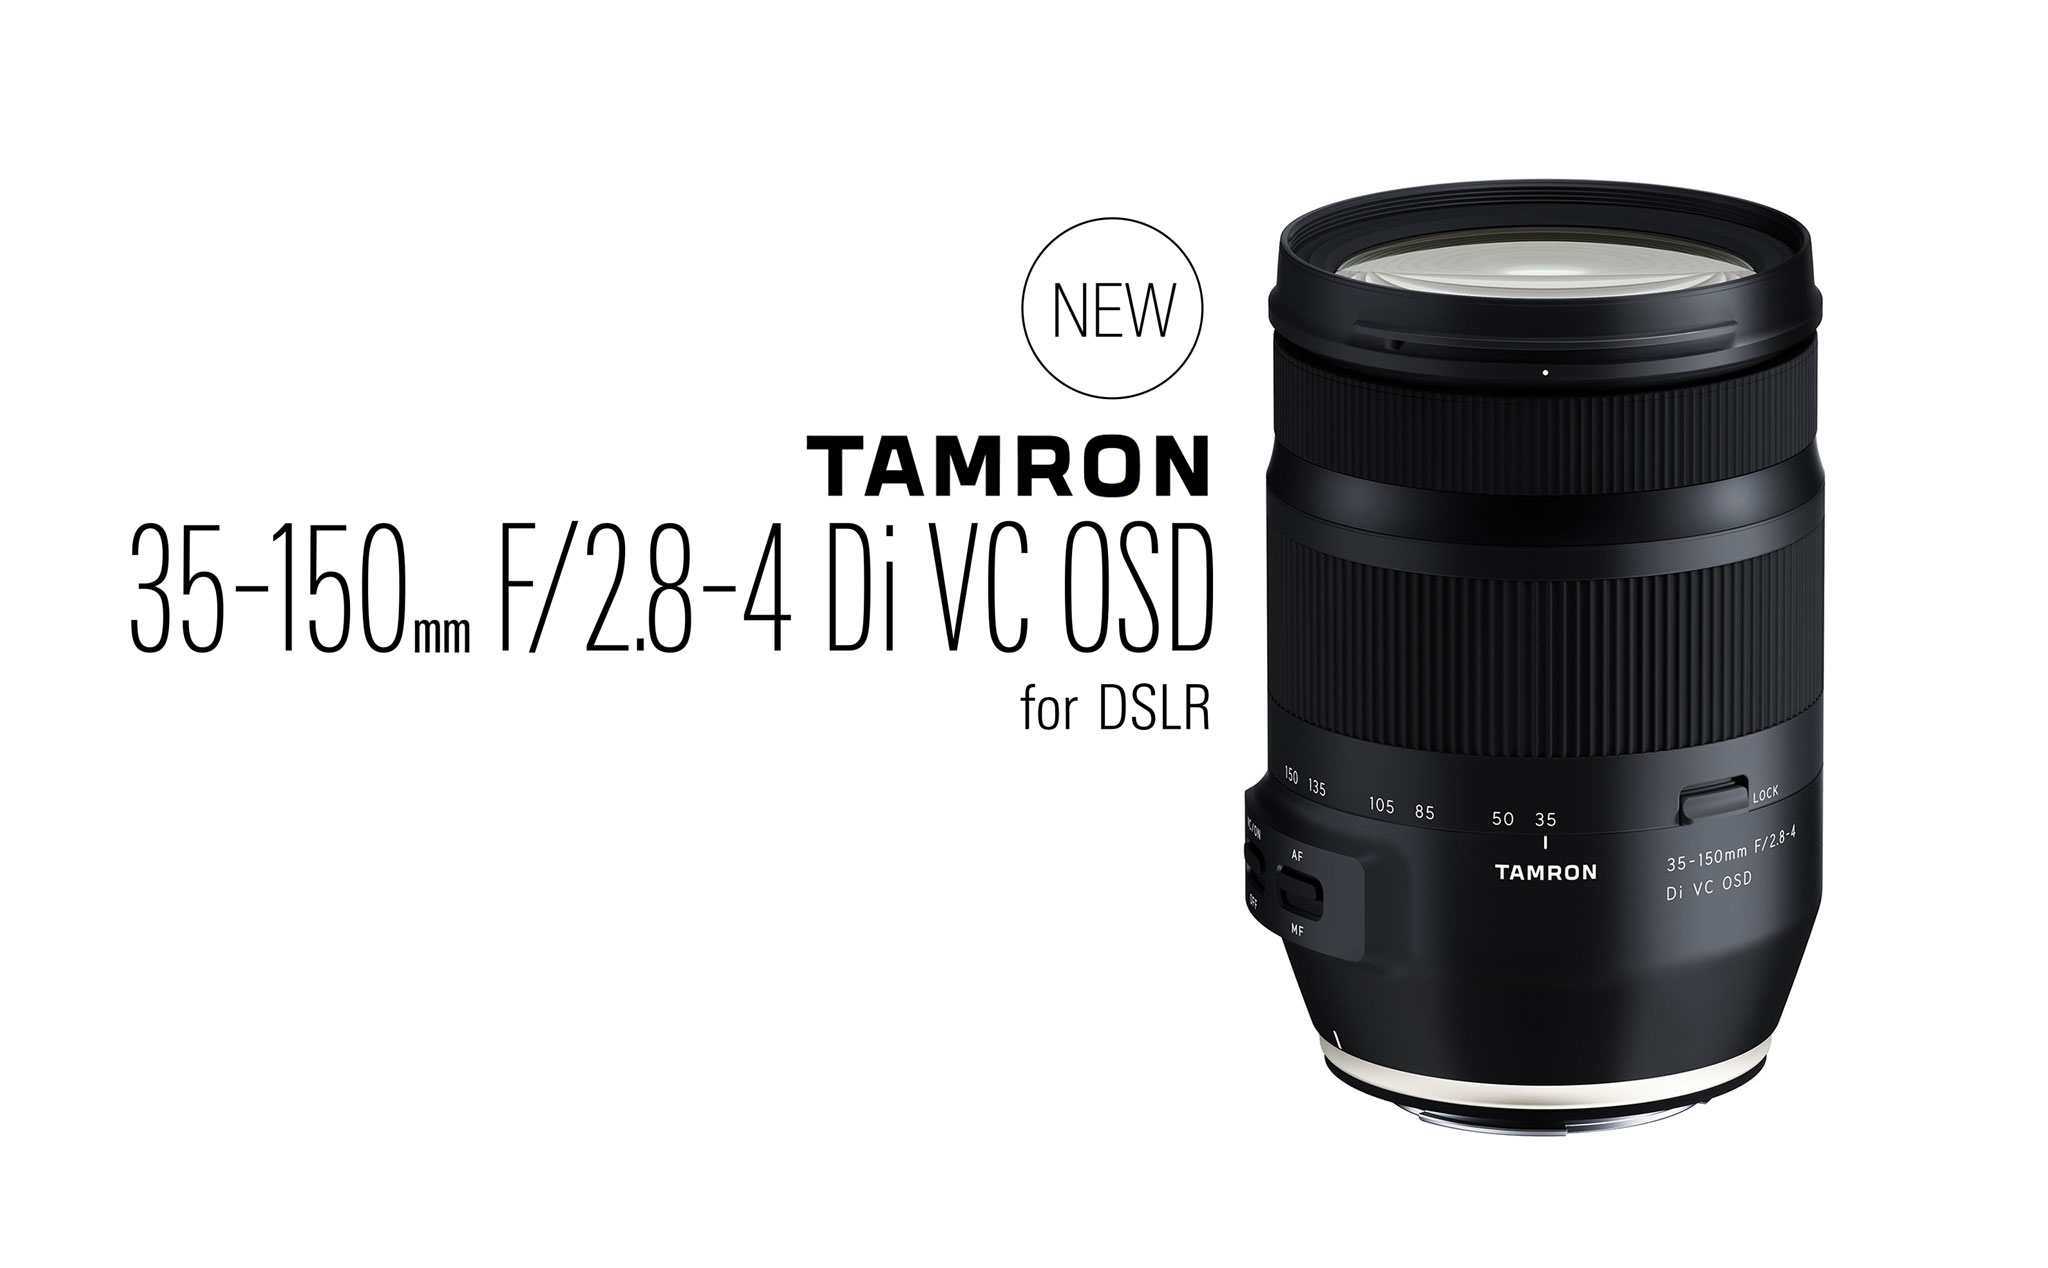 Tamron giới thiệu ống kính 35-150mm f/2.8-4 dành cho máy ảnh DSLR Fullframe Canon và Nikon, giá 799$